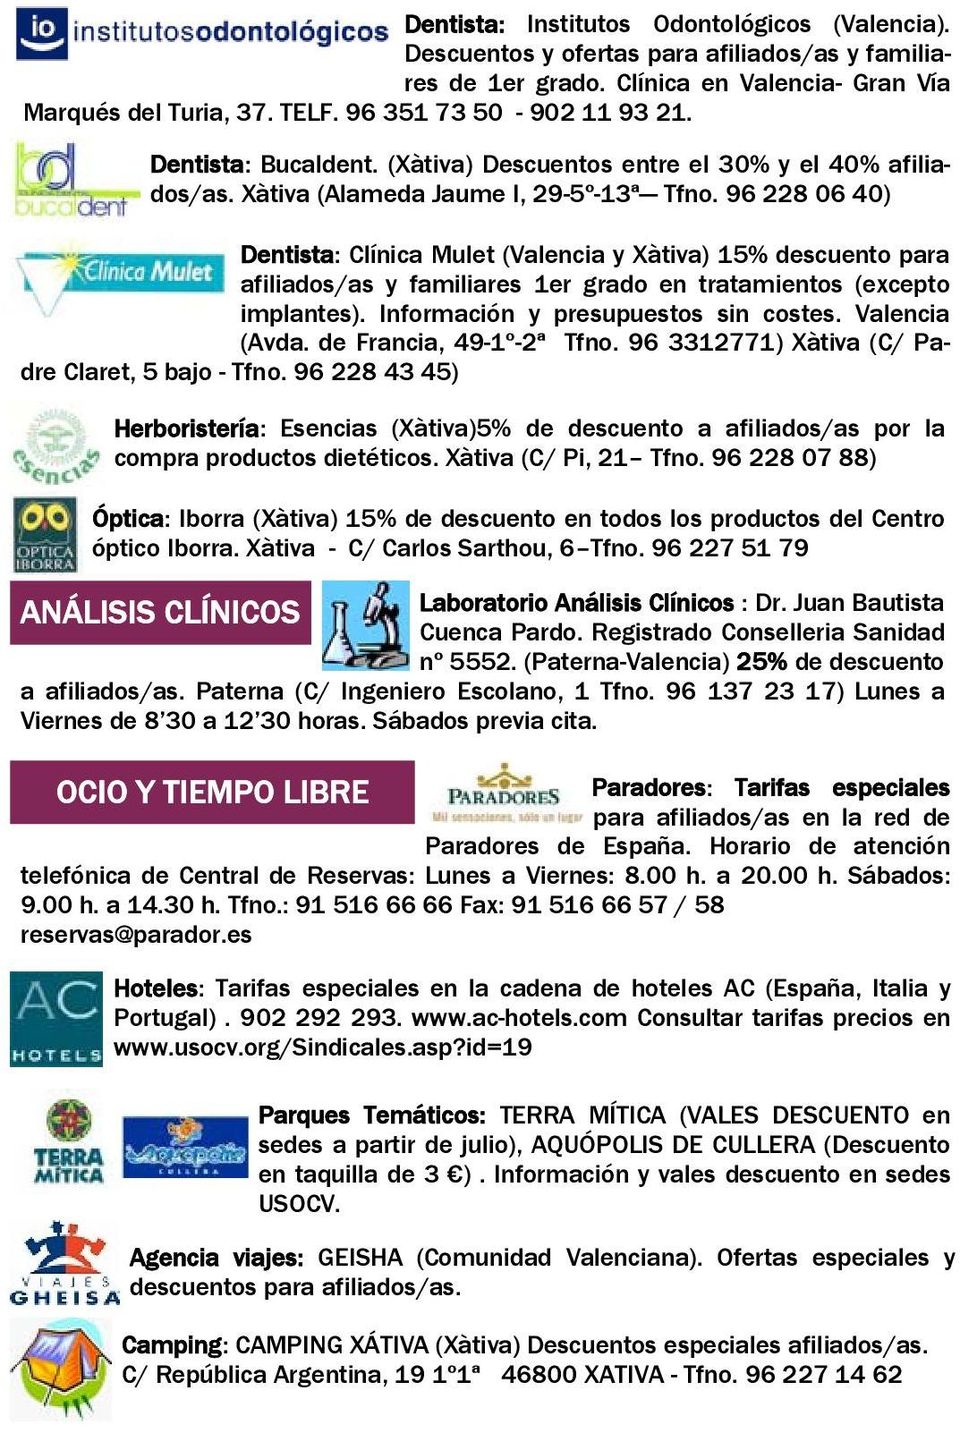 96 228 06 40) Dentista: Clínica Mulet (Valencia y Xàtiva) 15% descuento para afiliados/as y familiares 1er grado en tratamientos (excepto implantes). Información y presupuestos sin costes.